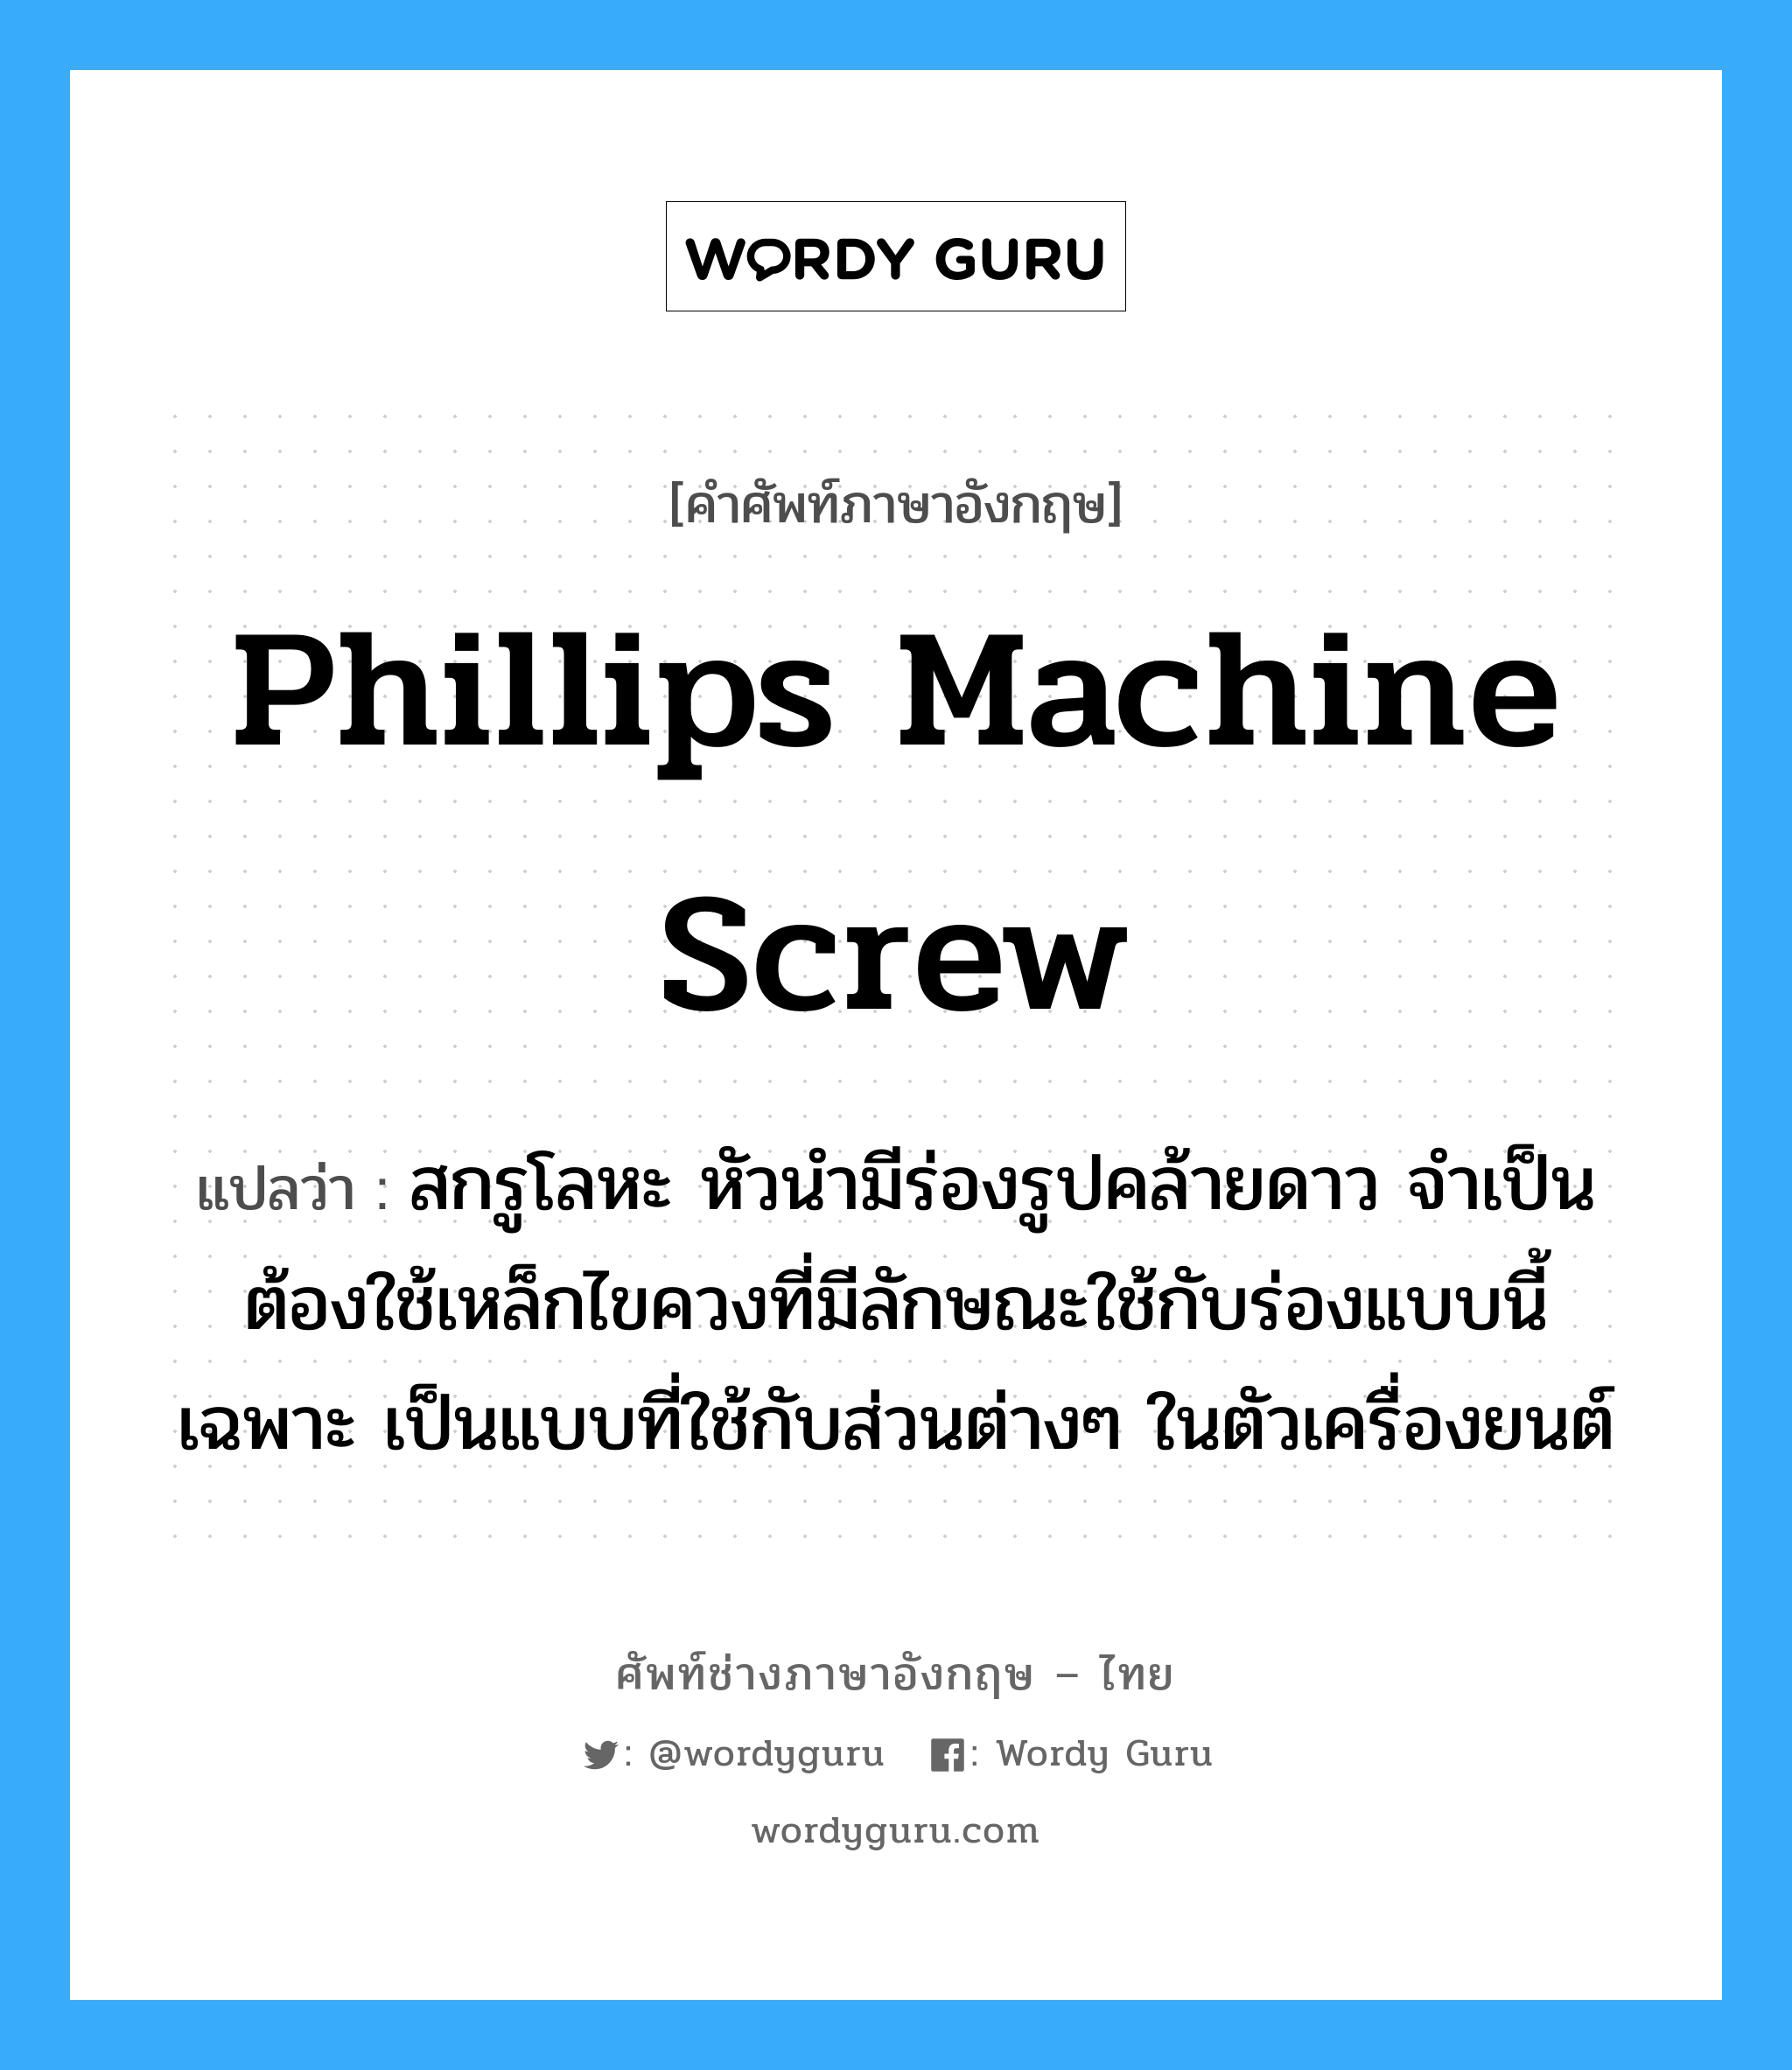 Phillips machine screw แปลว่า?, คำศัพท์ช่างภาษาอังกฤษ - ไทย Phillips machine screw คำศัพท์ภาษาอังกฤษ Phillips machine screw แปลว่า สกรูโลหะ หัวนำมีร่องรูปคล้ายดาว จำเป็นต้องใช้เหล็กไขควงที่มีลักษณะใช้กับร่องแบบนี้เฉพาะ เป็นแบบที่ใช้กับส่วนต่างๆ ในตัวเครื่องยนต์